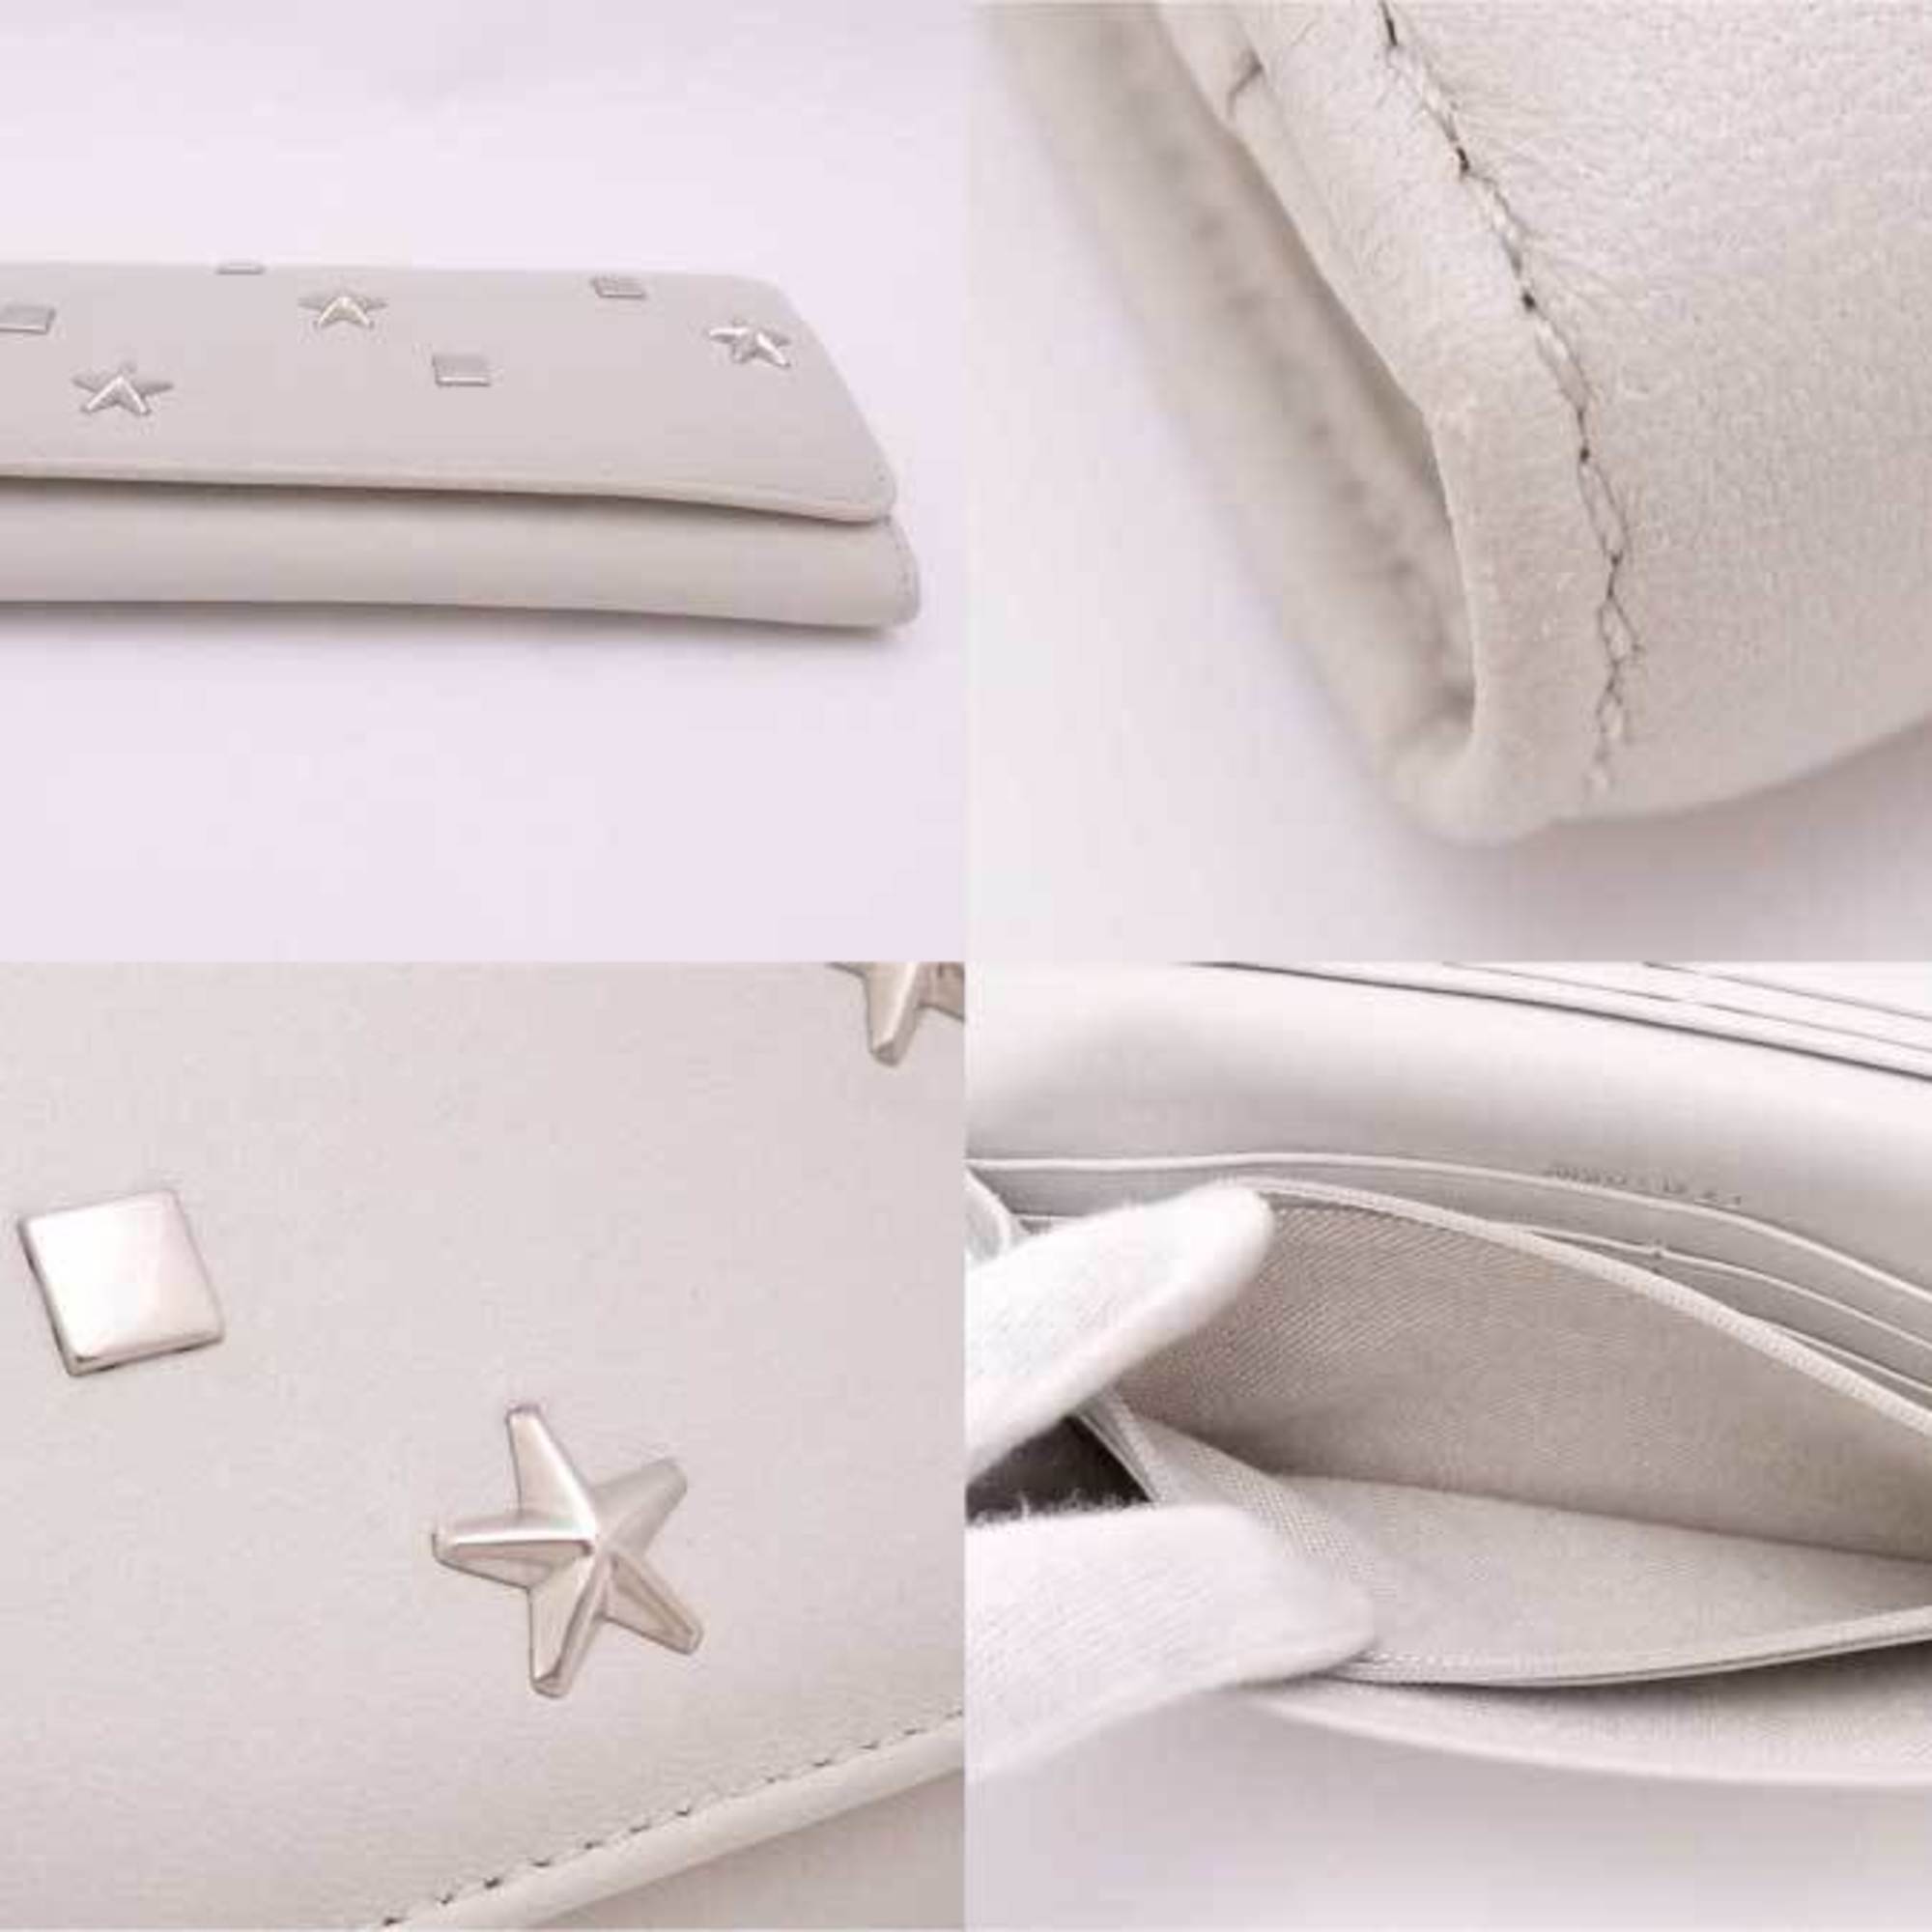 Jimmy Choo JIMMY CHOO Bi-Fold Long Wallet Star Studs Leather/Metal Light Gray x Silver Women's